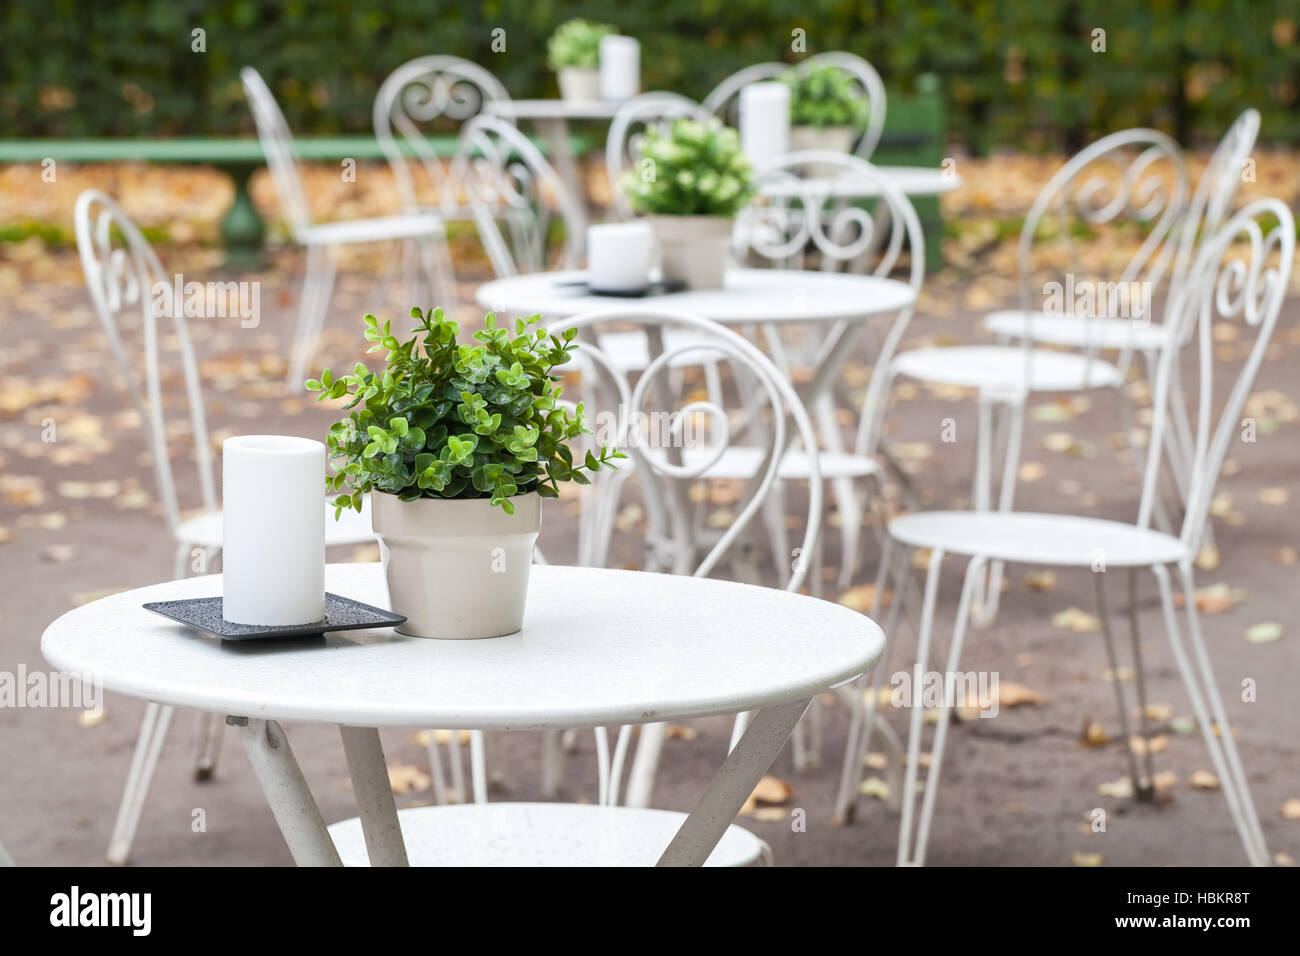 Outdoor-Cafeteria Hintergrund Interieur, Metall weiß Stühle und Tische mit dekorativen Grünpflanzen in Töpfen und Kerzen Stockfoto